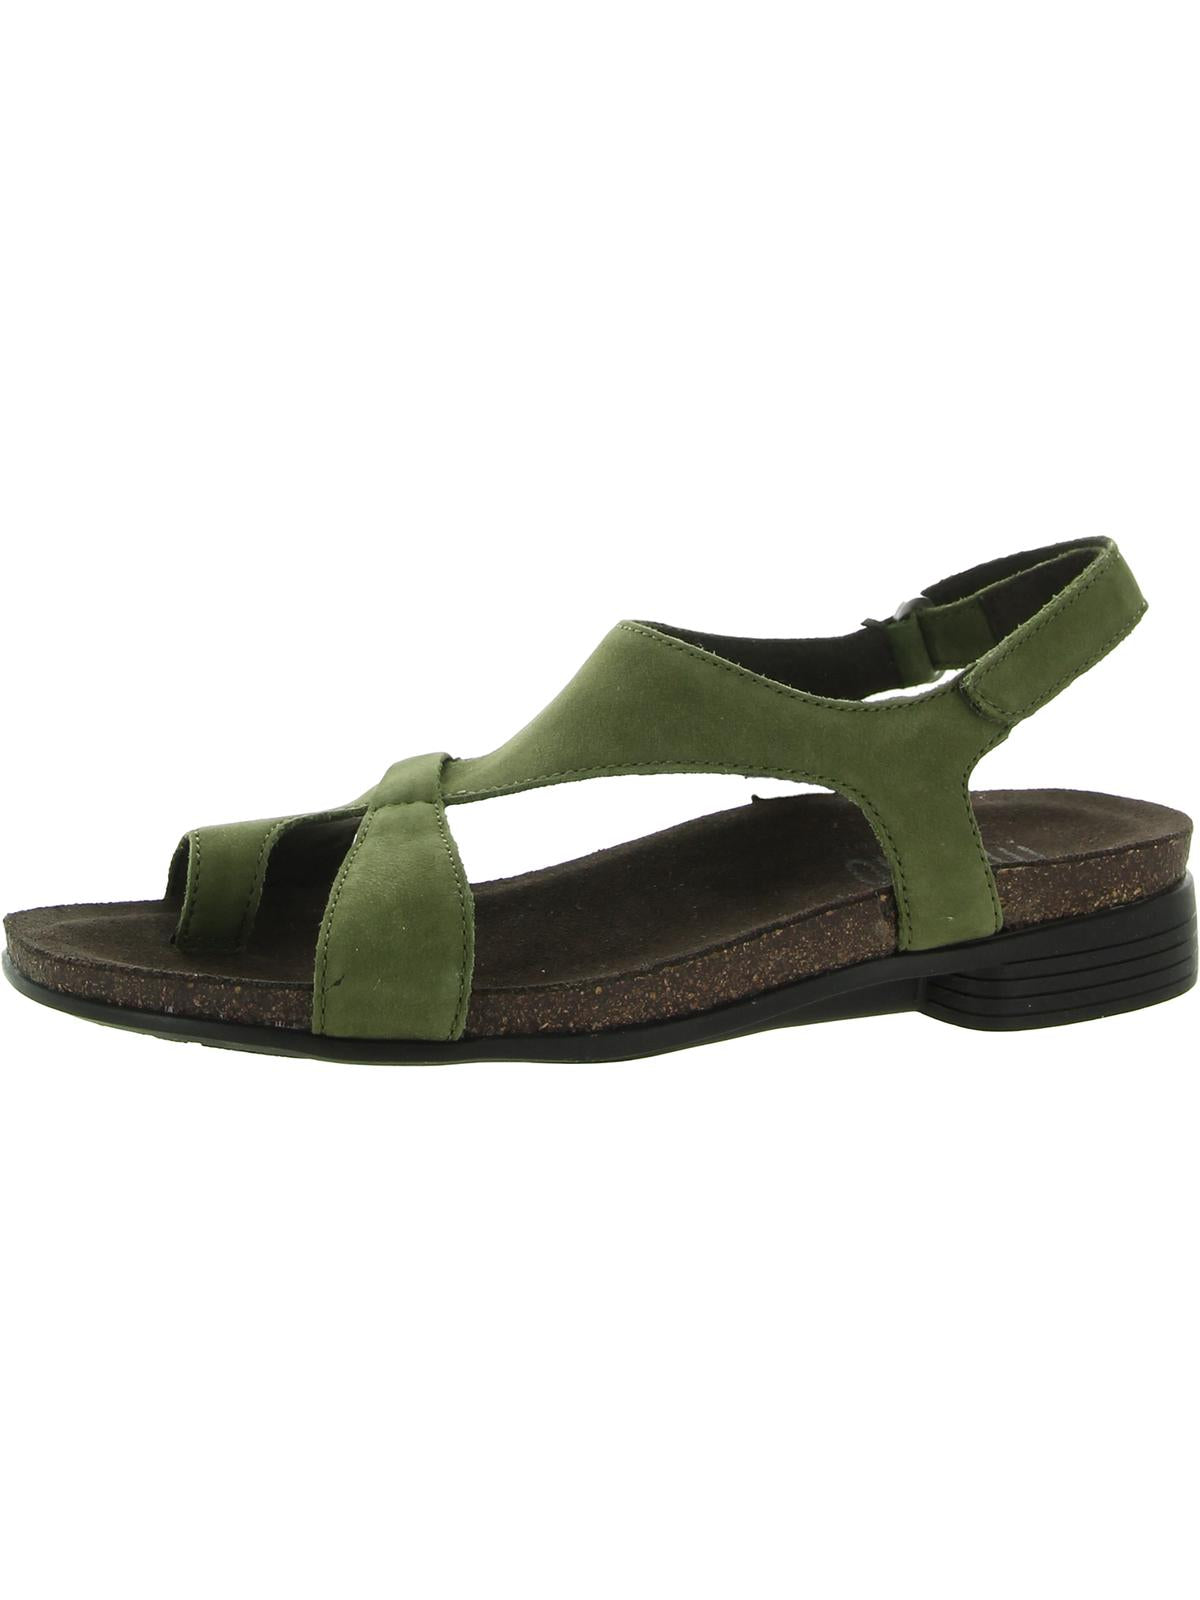 MUNRO Meghan  Womens Slip On Velcro Slingback Sandals